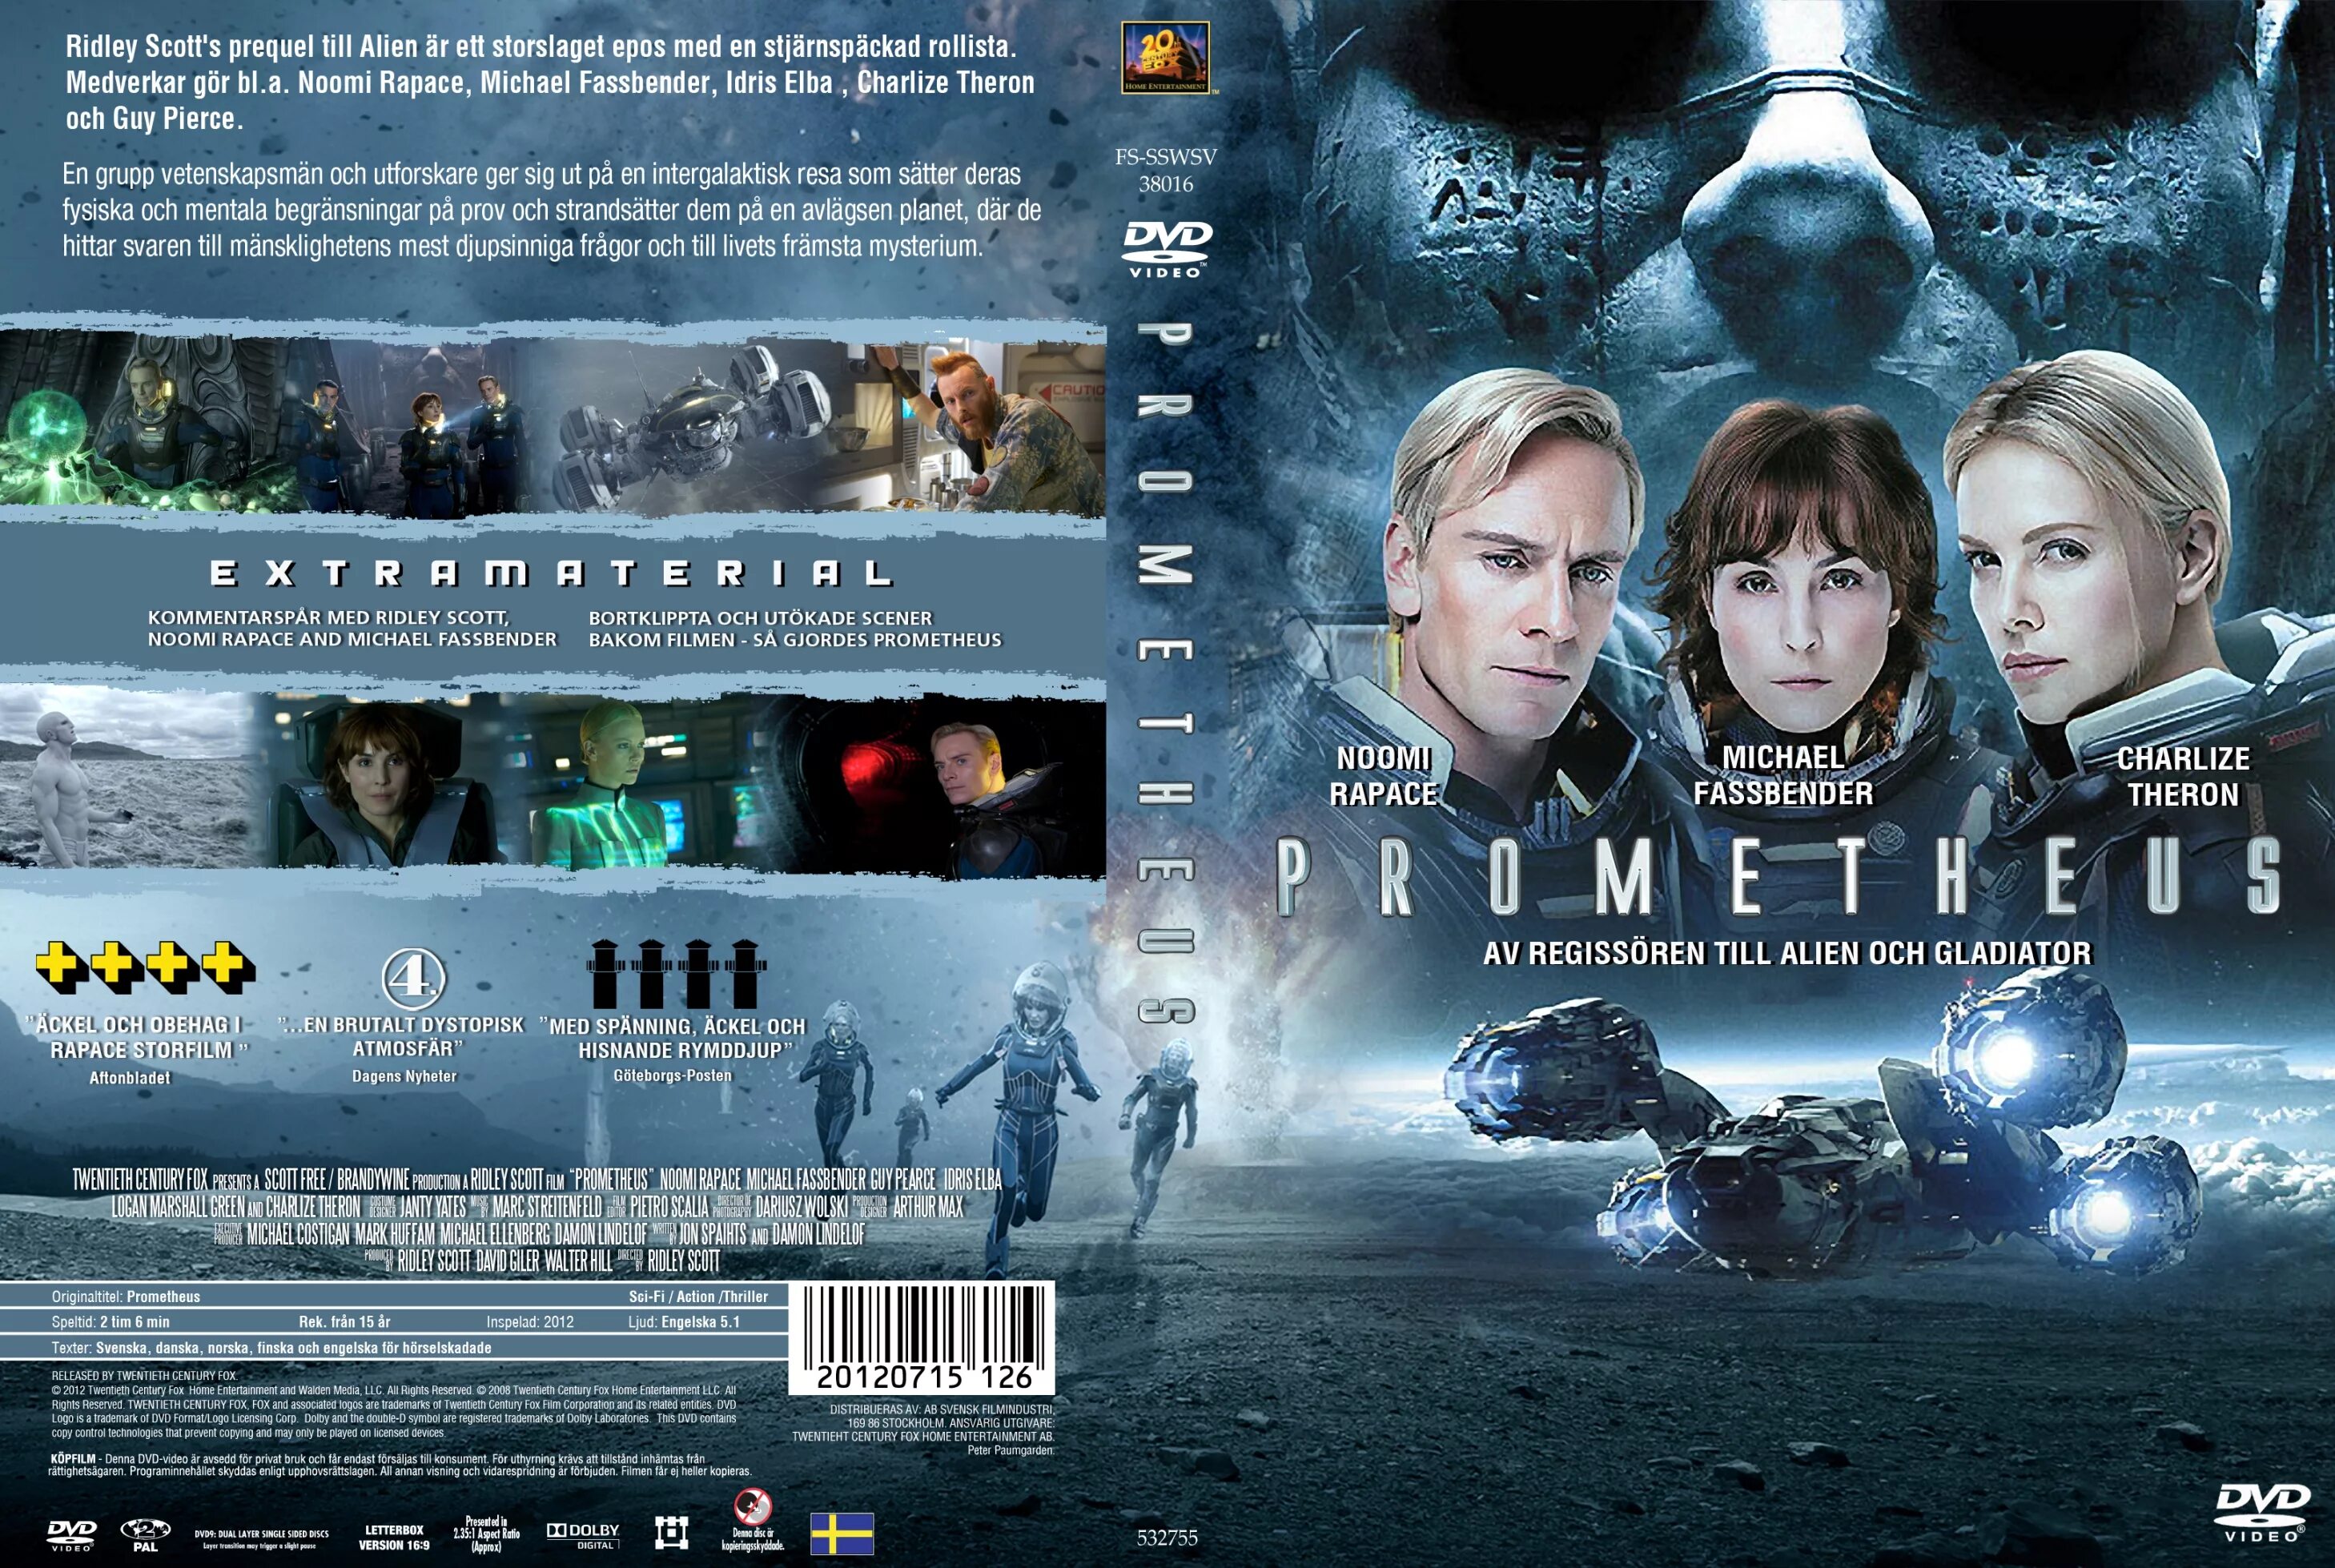 Прометей Prometheus (2012). Прометей (2012) (Prometheus) Постер. 2012 обложка